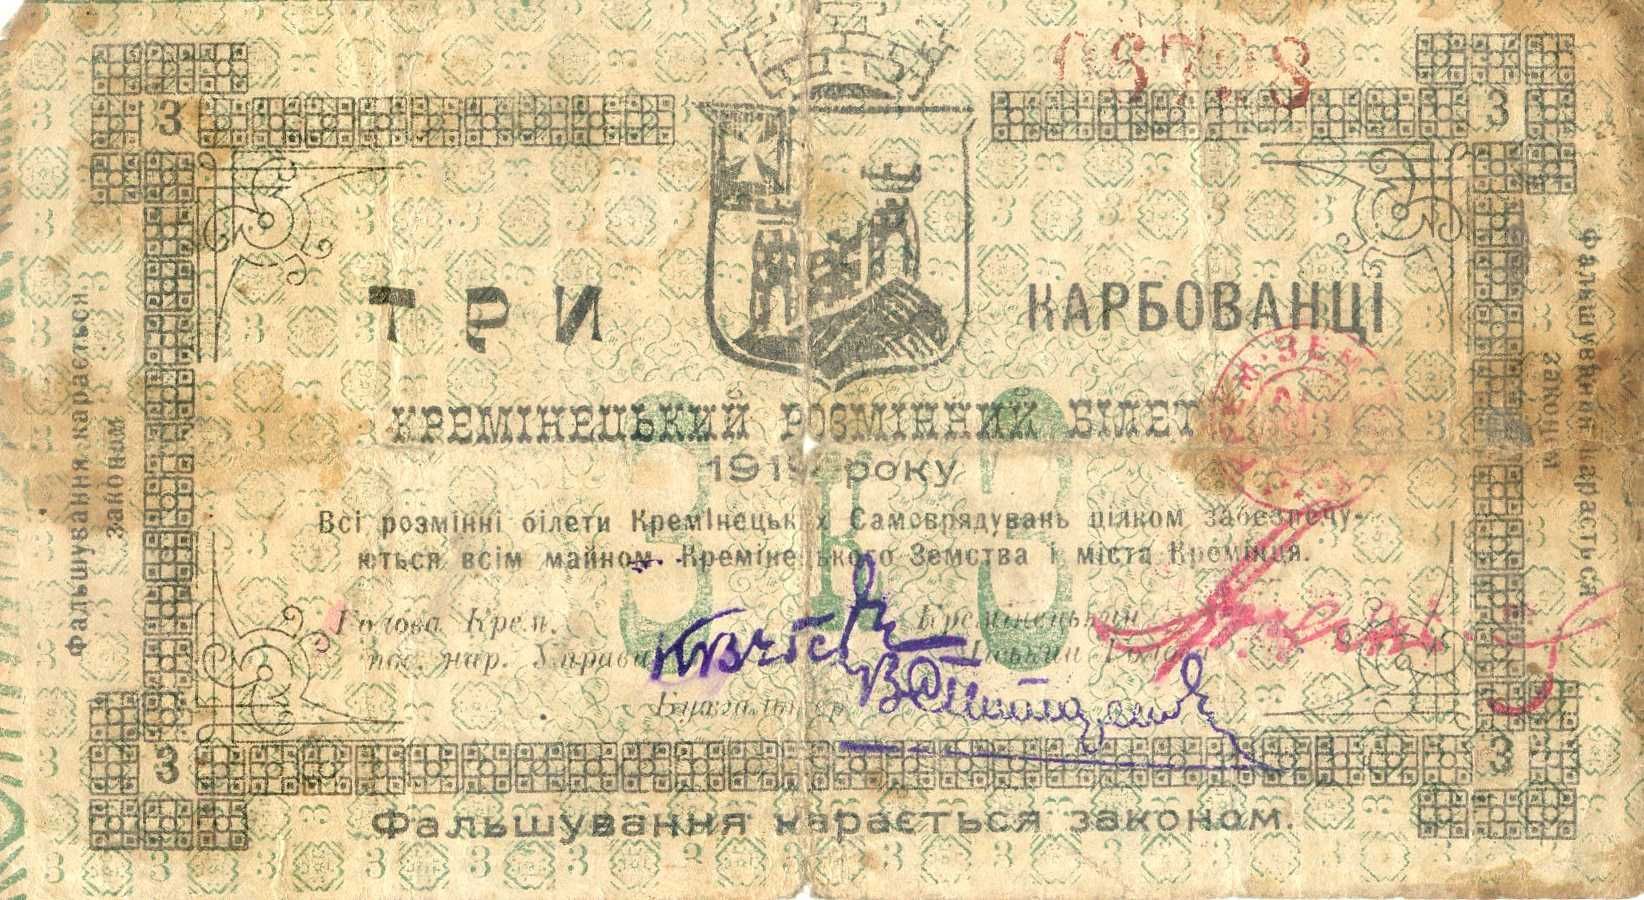 3 карбованці 1919.р. Кремінець Кремінецький розмінний білет